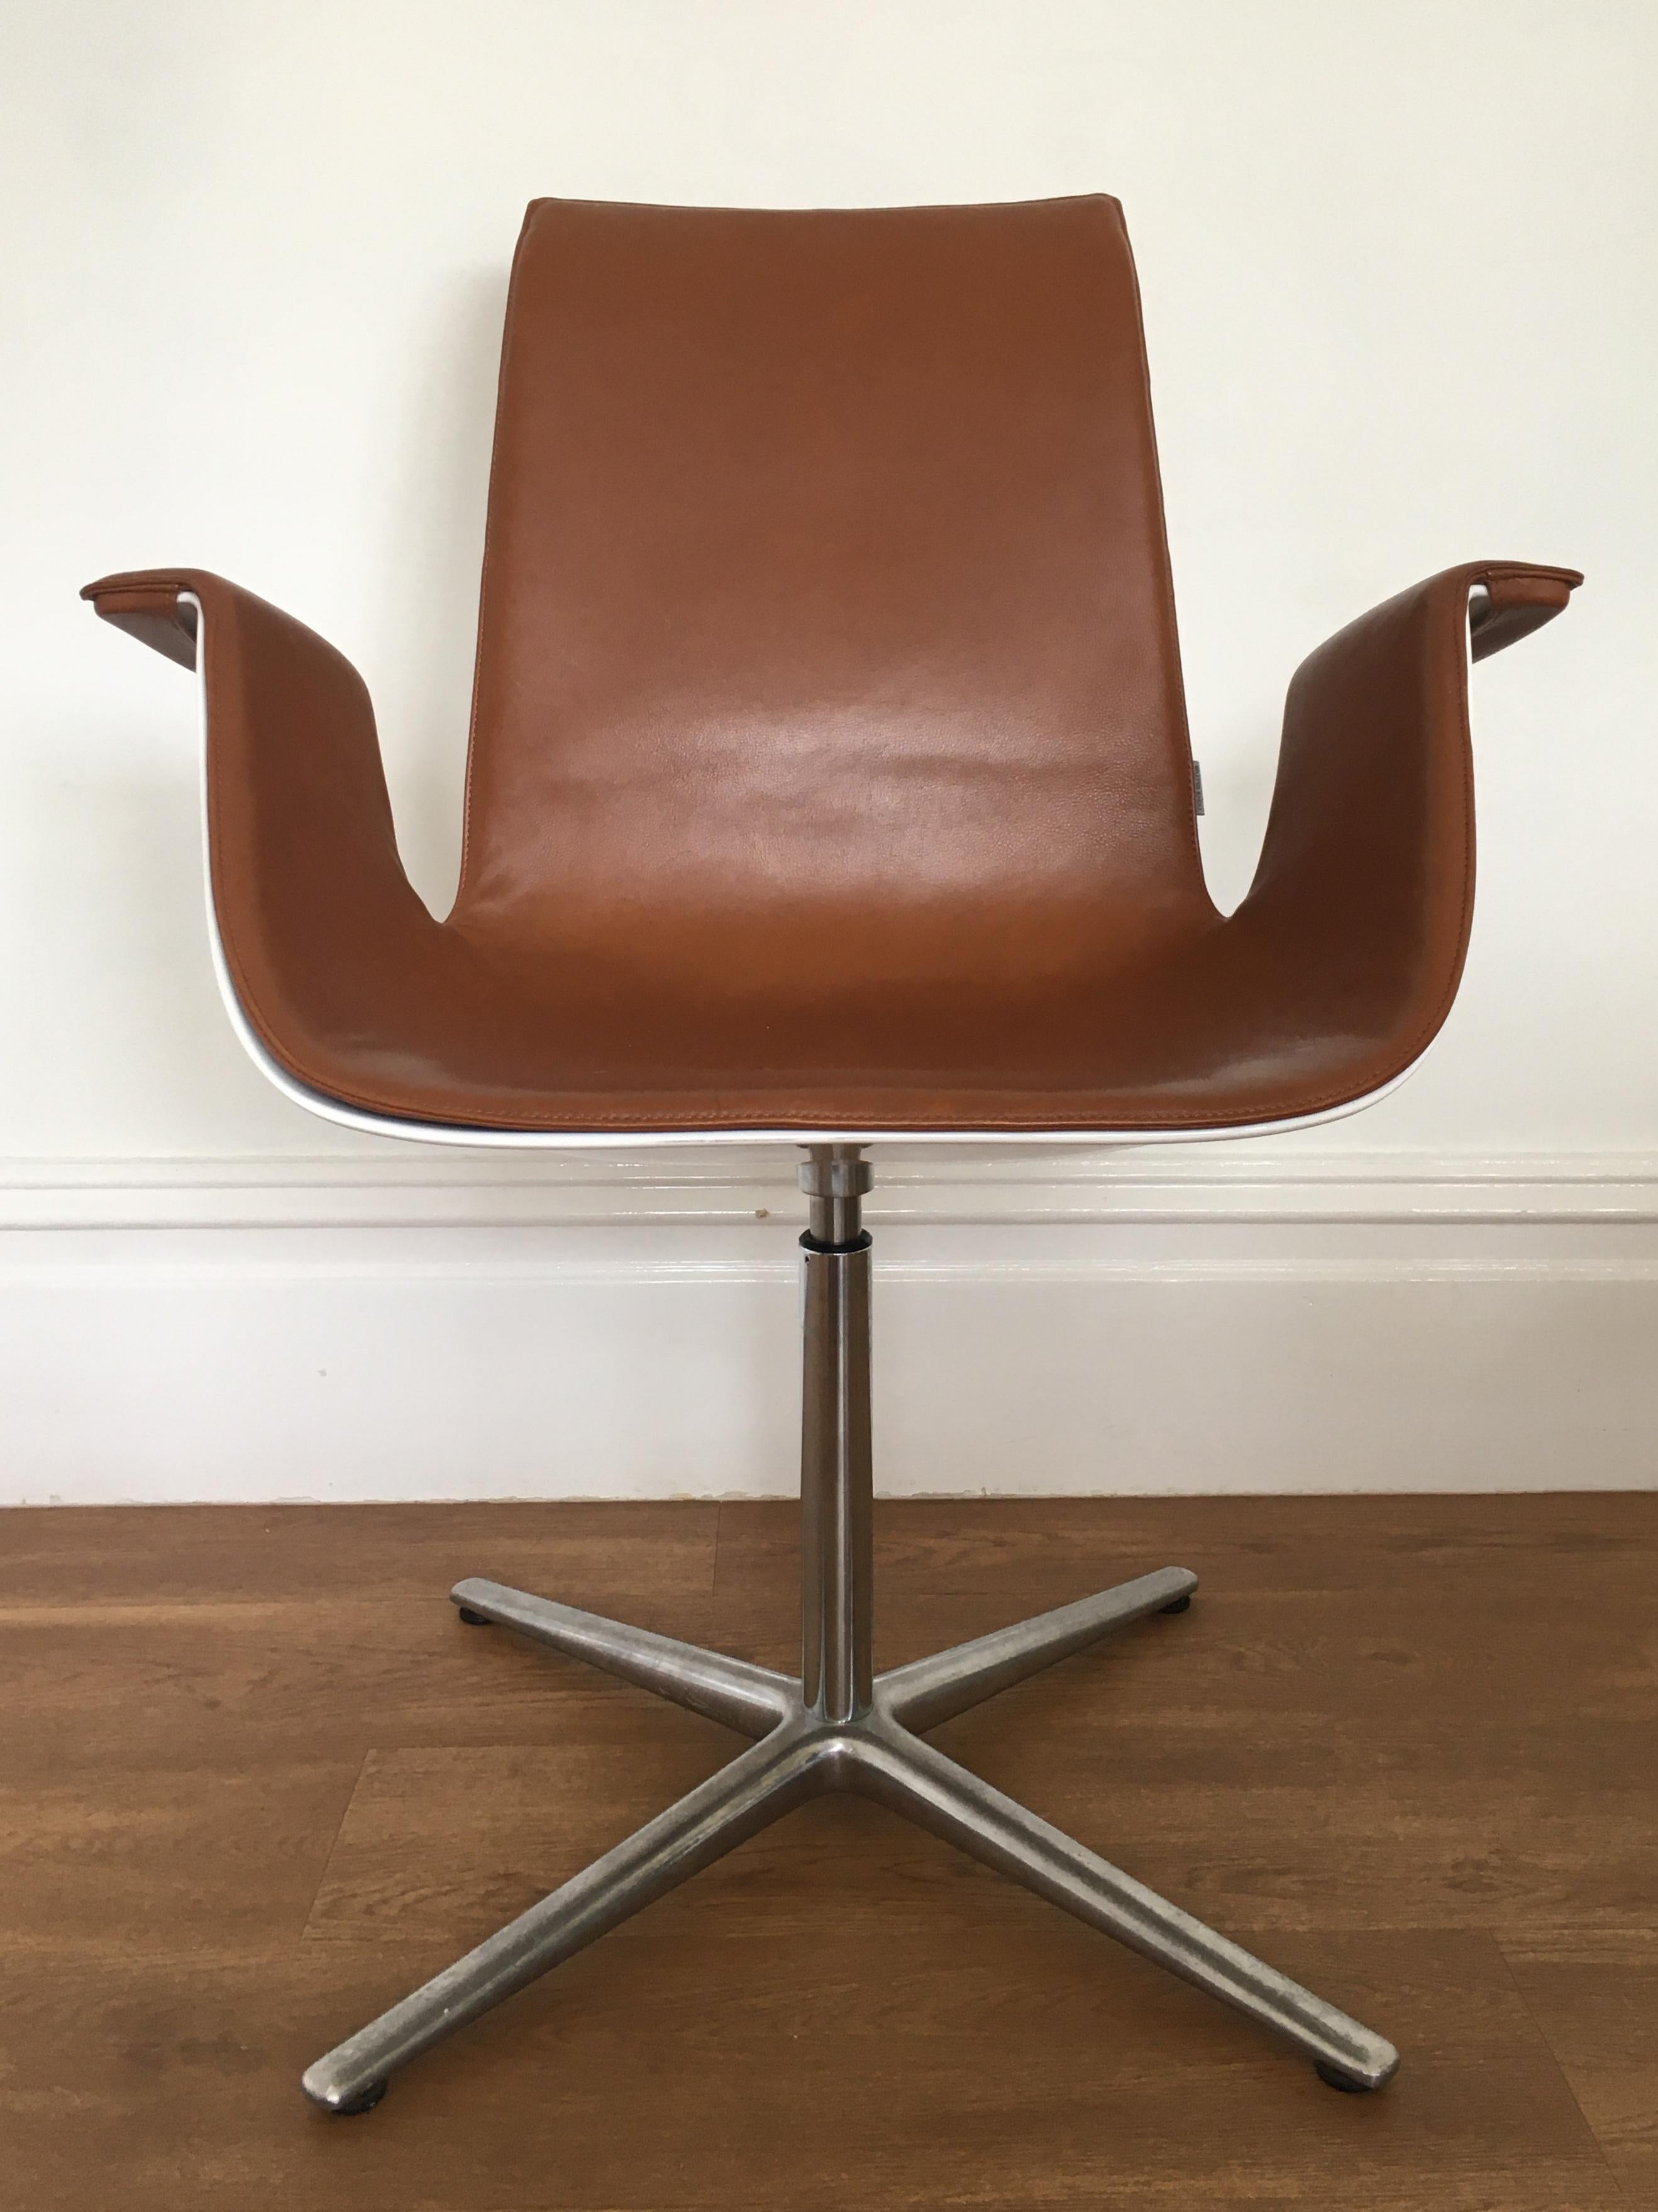 Der 1967 von Fabricius und Kastholm entworfene FK Bucket Chair (auch bekannt als Bird Chair) ist eines der ikonischen, sofort erkennbaren Designs aus der Mitte des 20. Jahrhunderts.

Der Stuhl hat eine hellbraune Lederpolsterung mit einer weiß